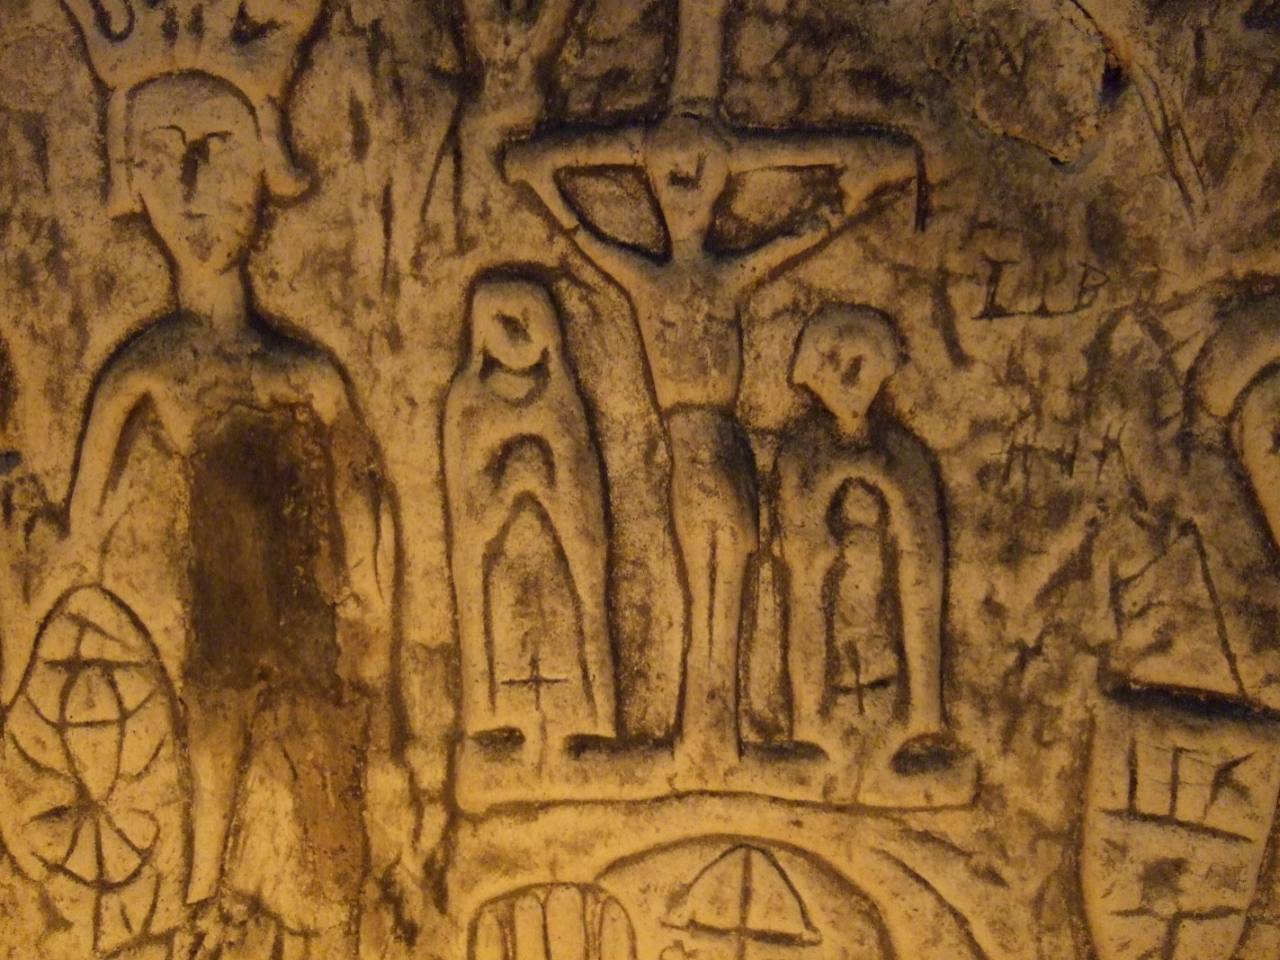 İnsan yapımı Royston Mağarası 4'deki gizemli semboller ve oymalar